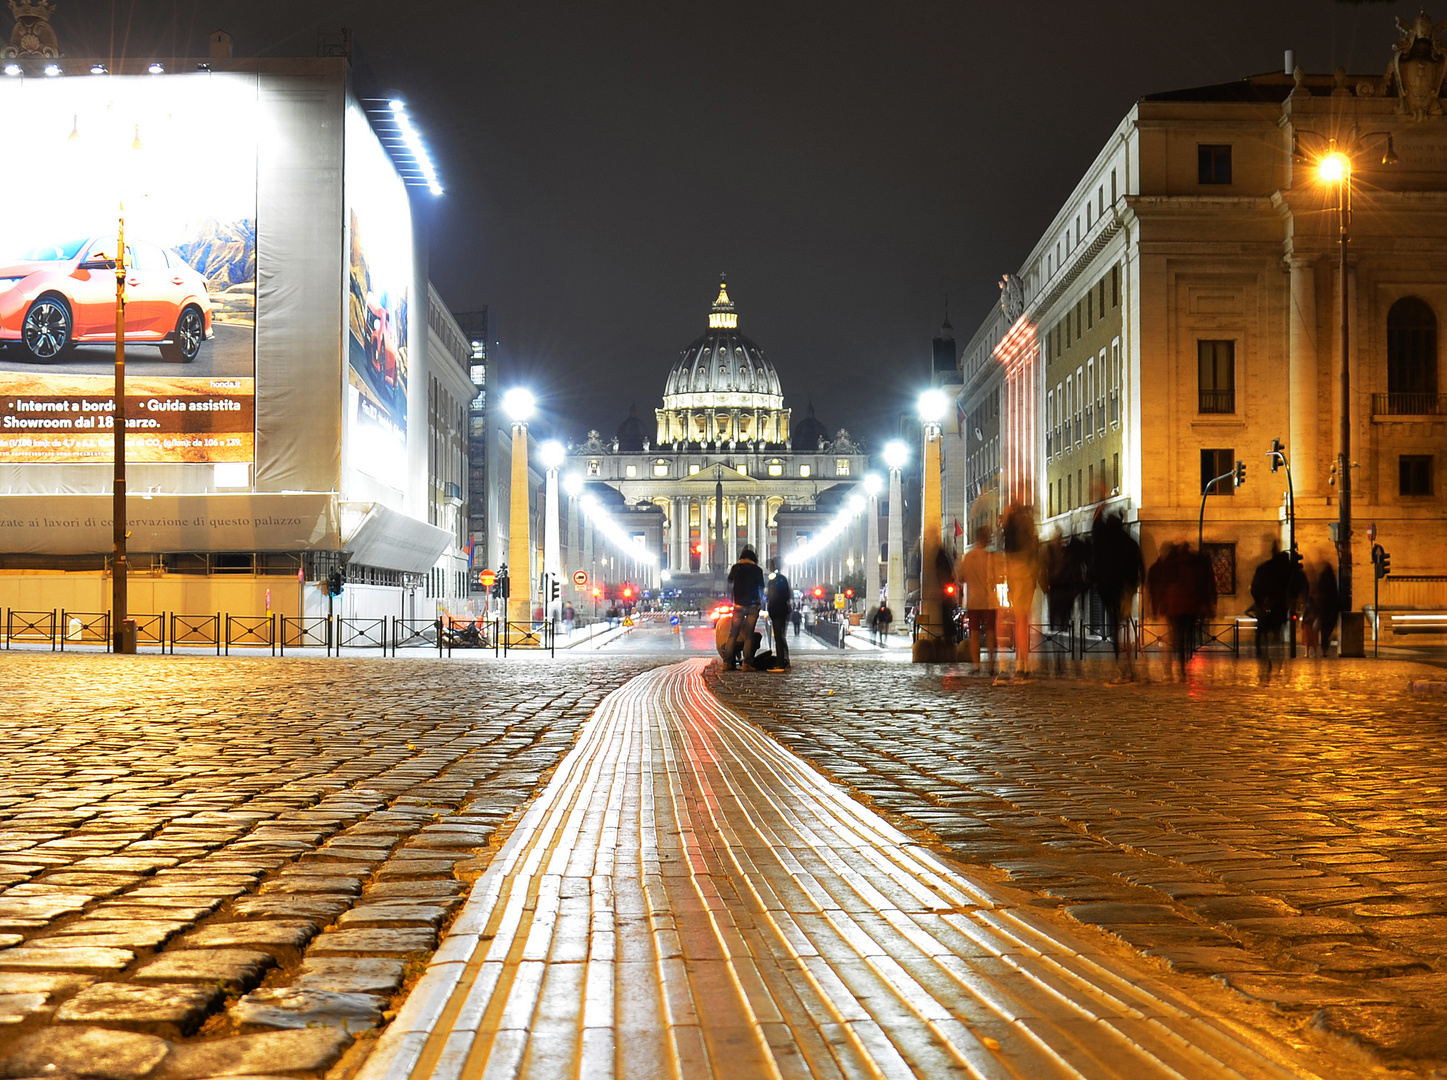 Rom bei Nacht und tausend Motive